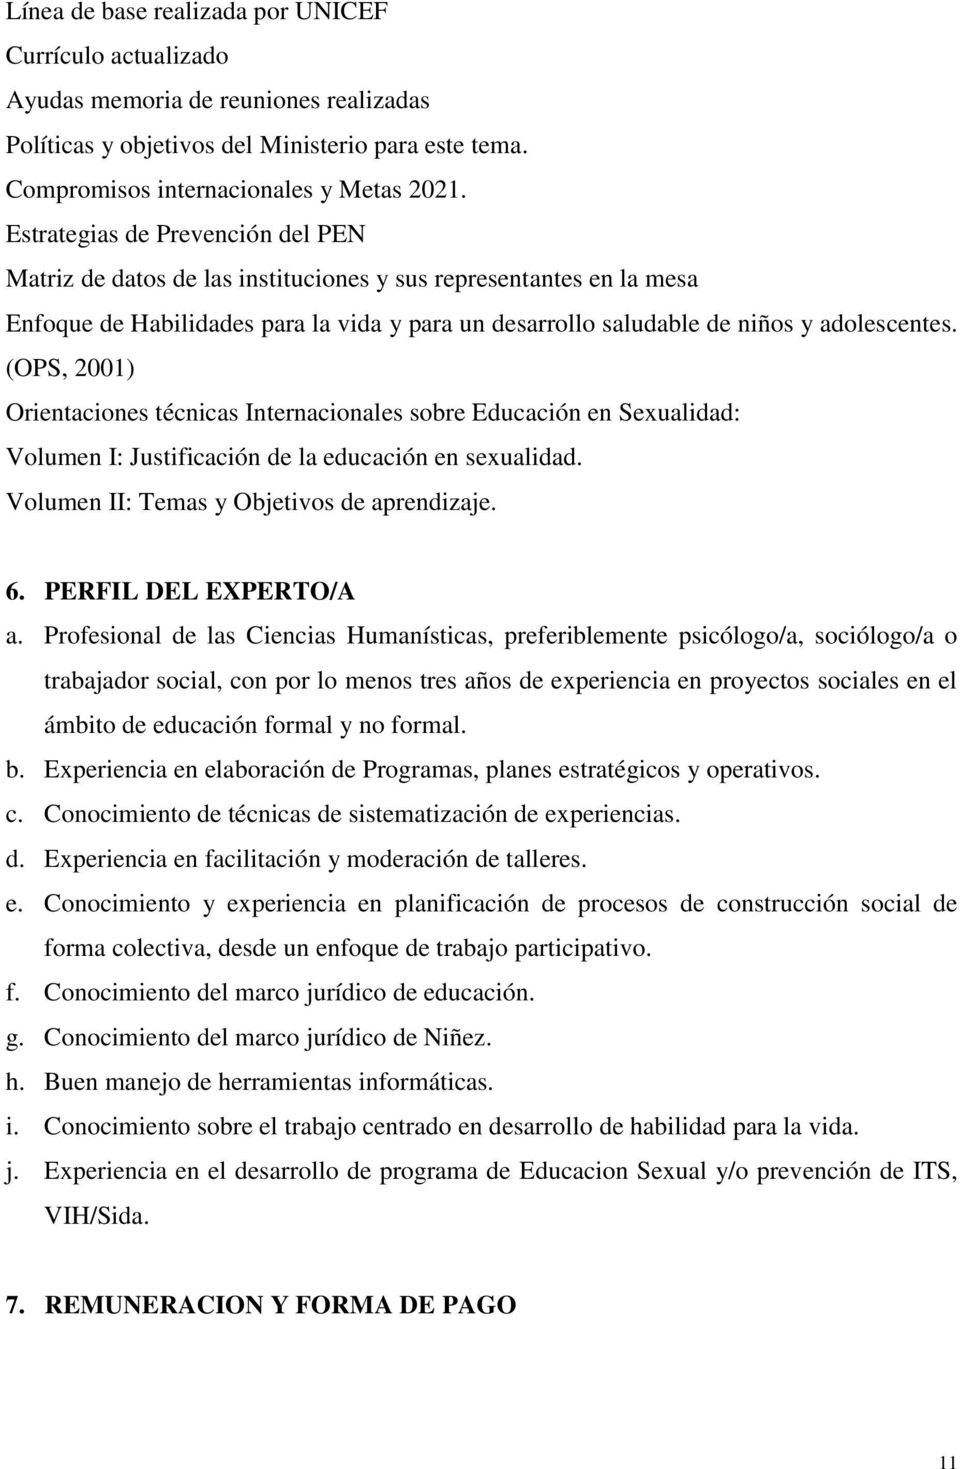 (OPS, 2001) Orientaciones técnicas Internacionales sobre Educación en Sexualidad: Volumen I: Justificación de la educación en sexualidad. Volumen II: Temas y Objetivos de aprendizaje. 6.